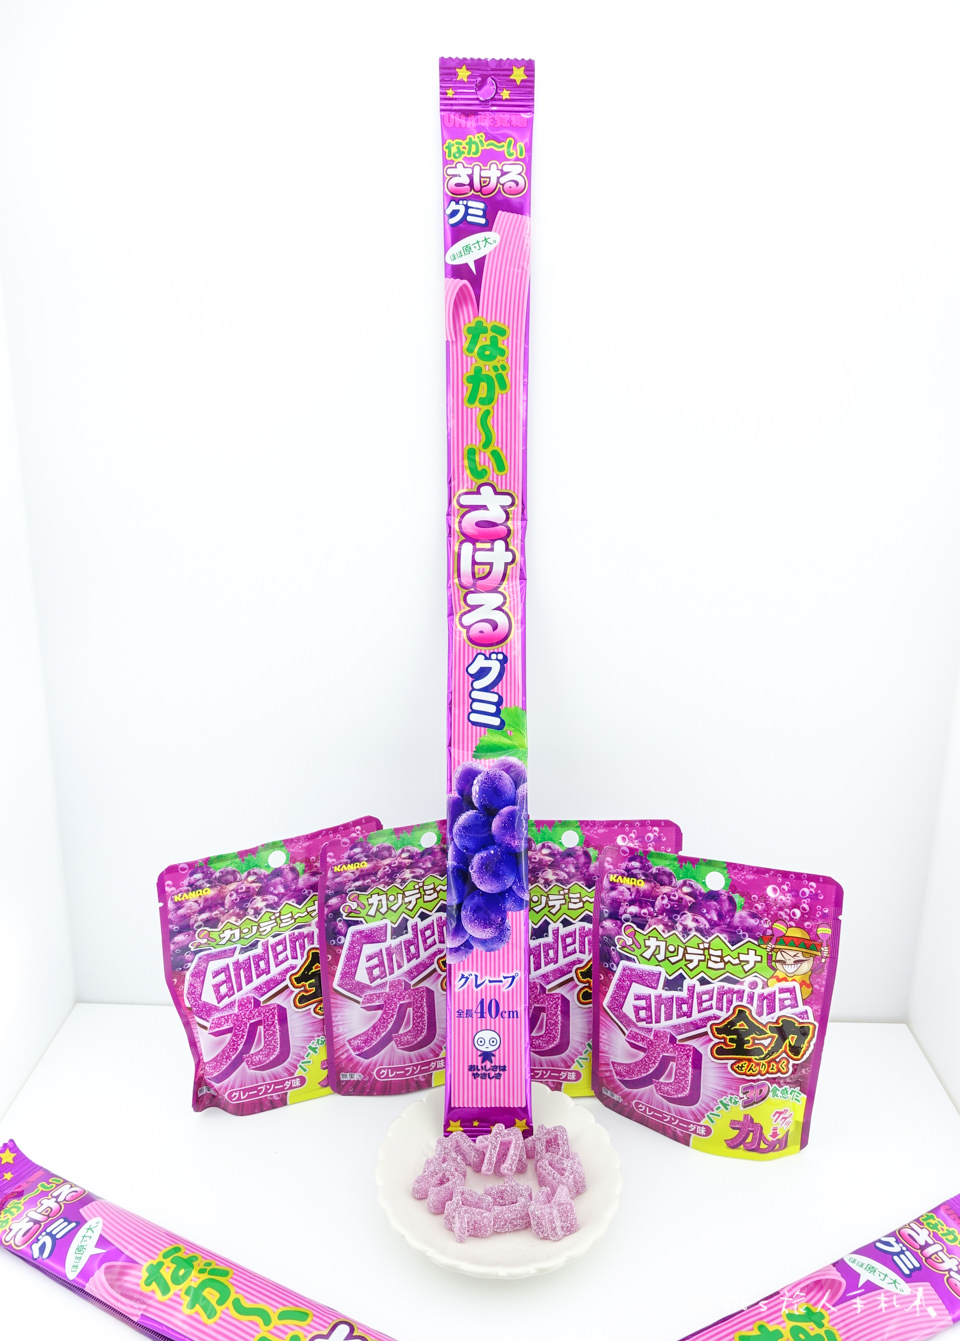 日本零食》kanro全力軟糖&UHA超長味覺糖│超有梗葡萄軟糖新上市